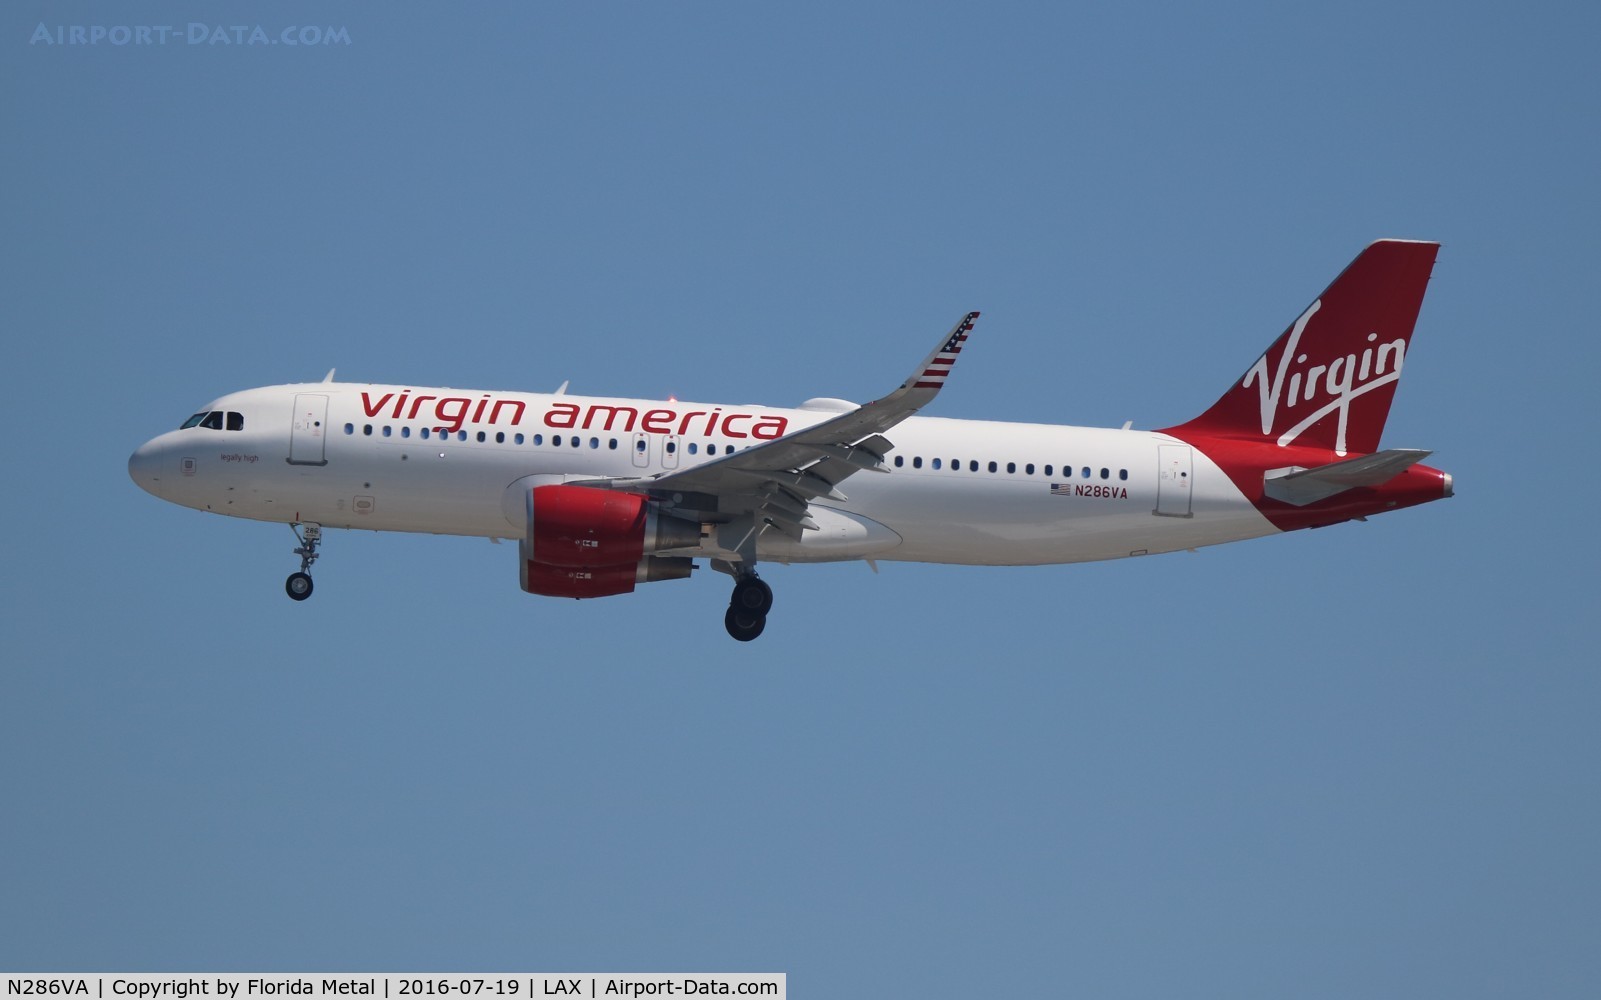 N286VA, 2015 Airbus A320-214 C/N 6939, Virgin America